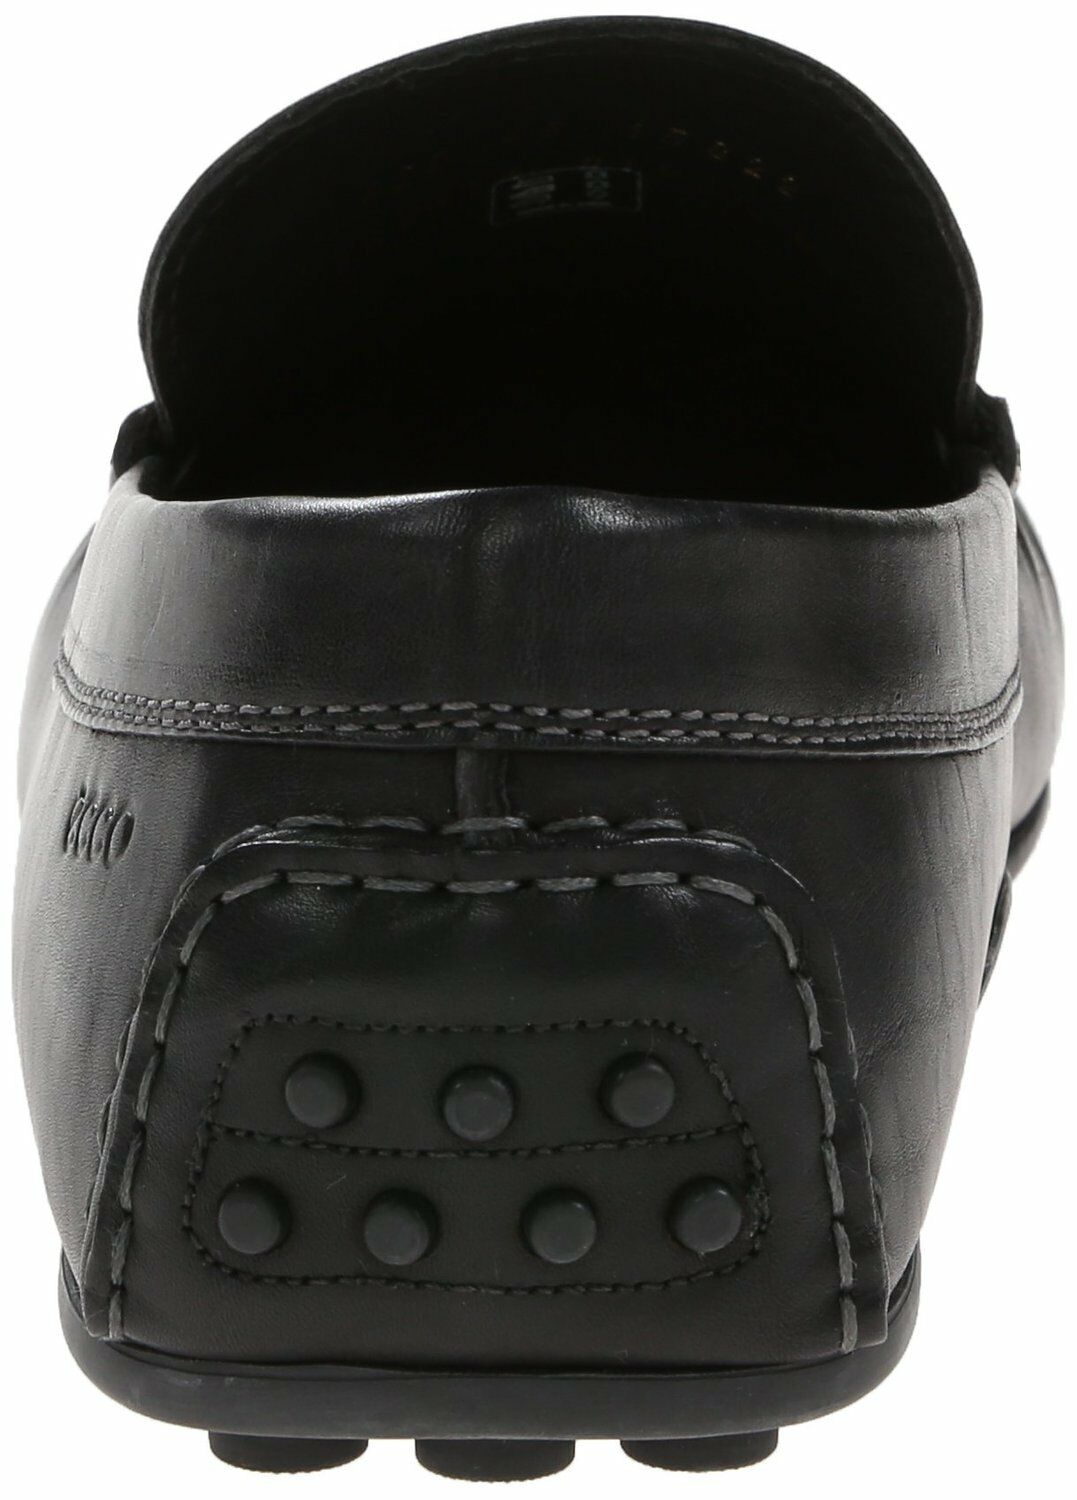 ECCO Men's 580414 Hybrid Black Leather Moccasin Slip-On Loafer